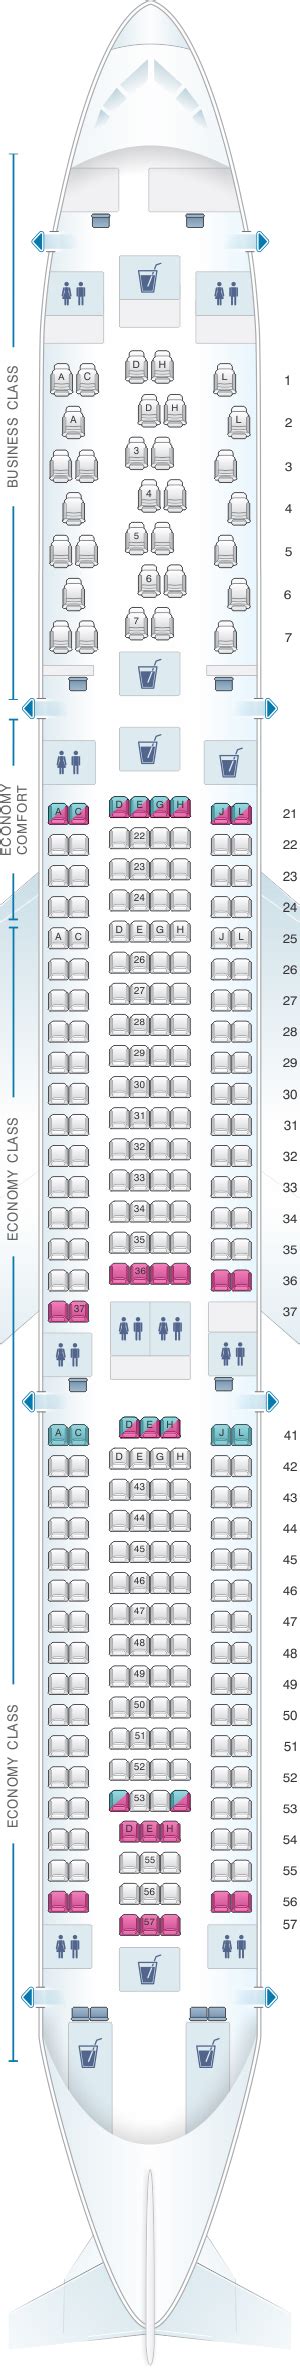 Finnair Airbus A330 300 Seat Map